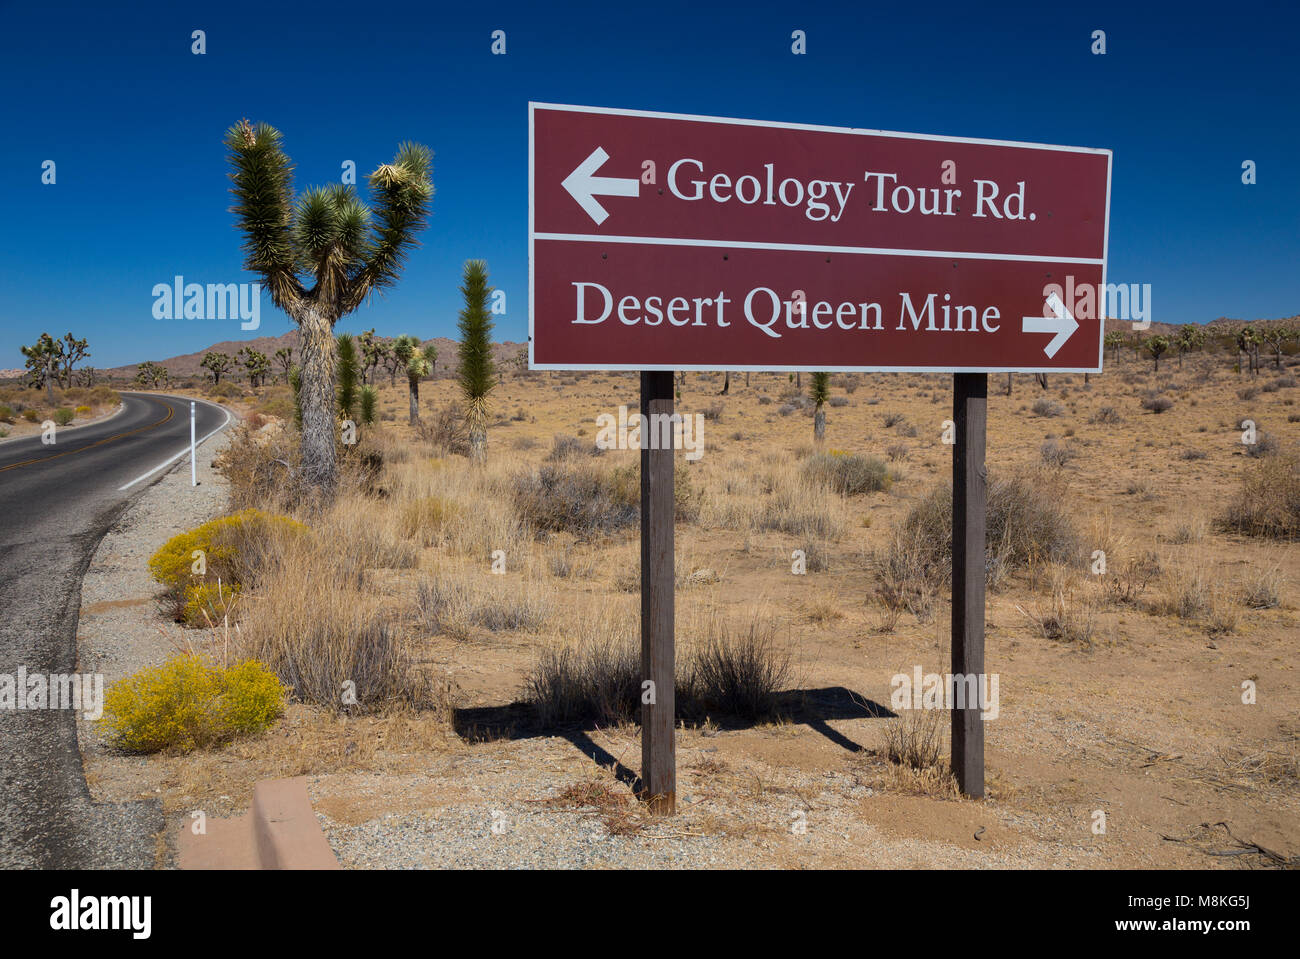 Schild an der Park Boulevard für Desert Queen Mine und Geologie Tour Road, Joshua Tree National Park, Kalifornien, USA Stockfoto